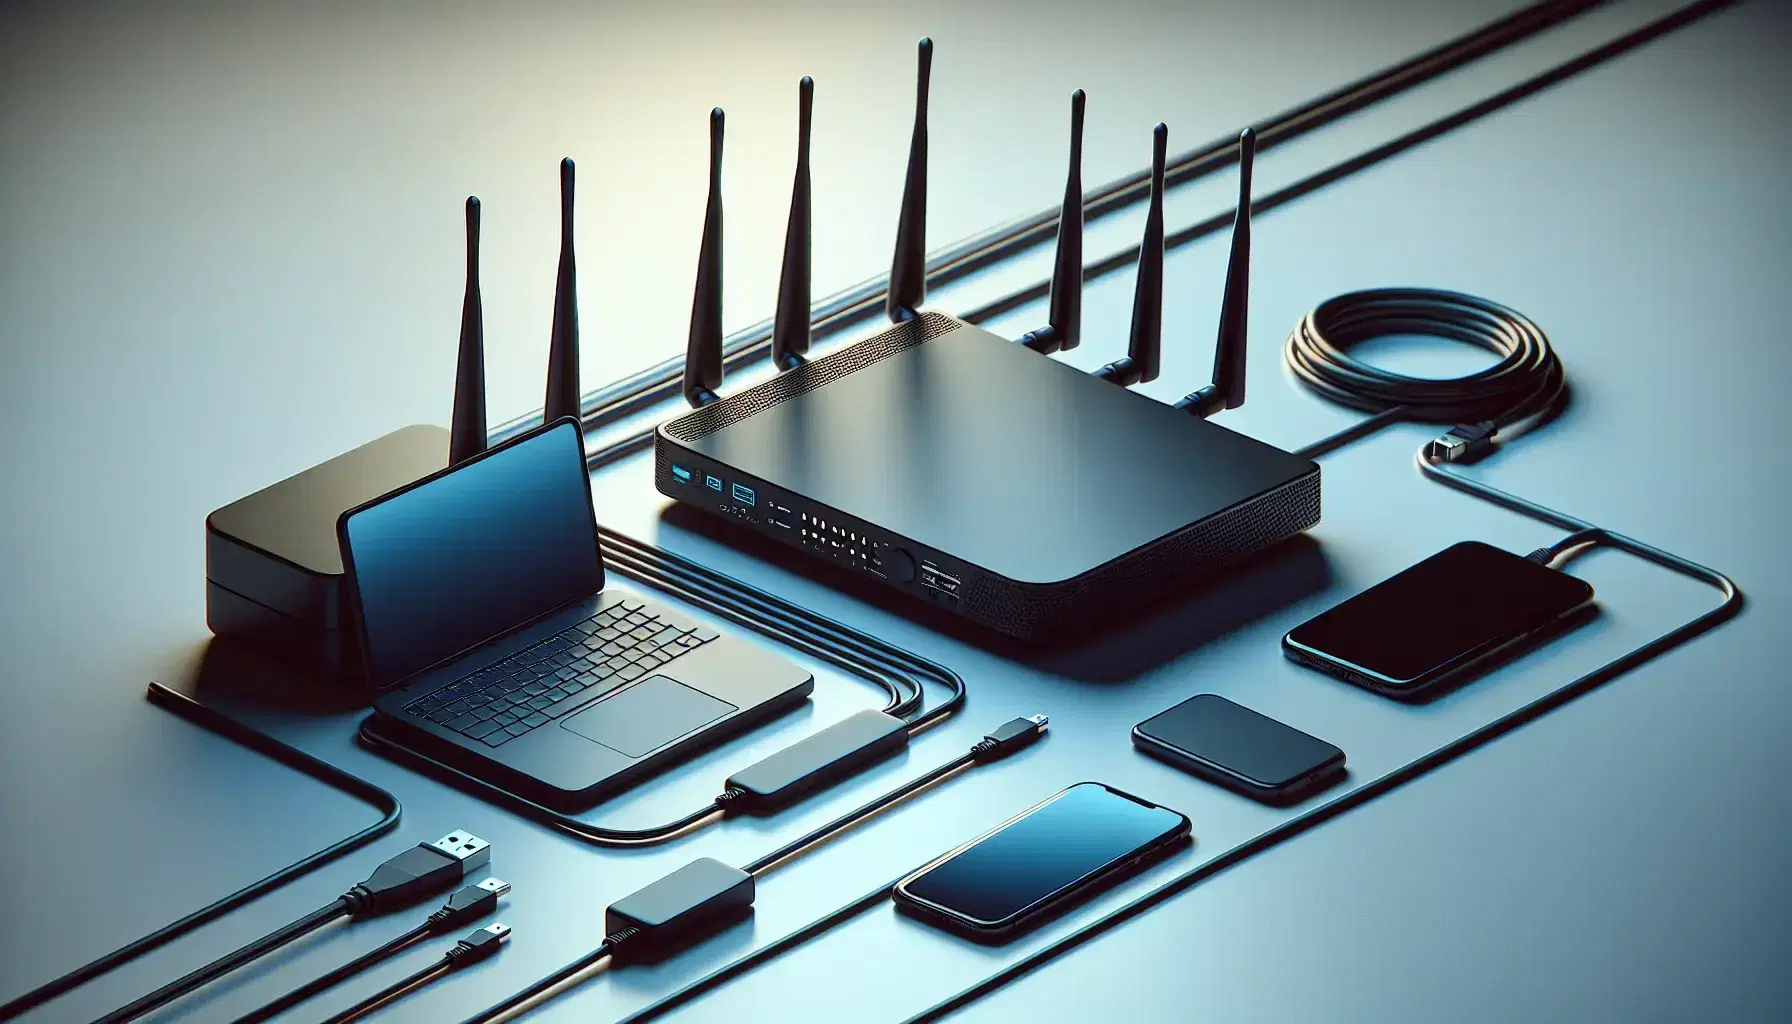 Router negro con antenas y dispositivos electrónicos, laptop abierto y smartphone encendido, sobre superficie clara con cables de colores entrecruzados.